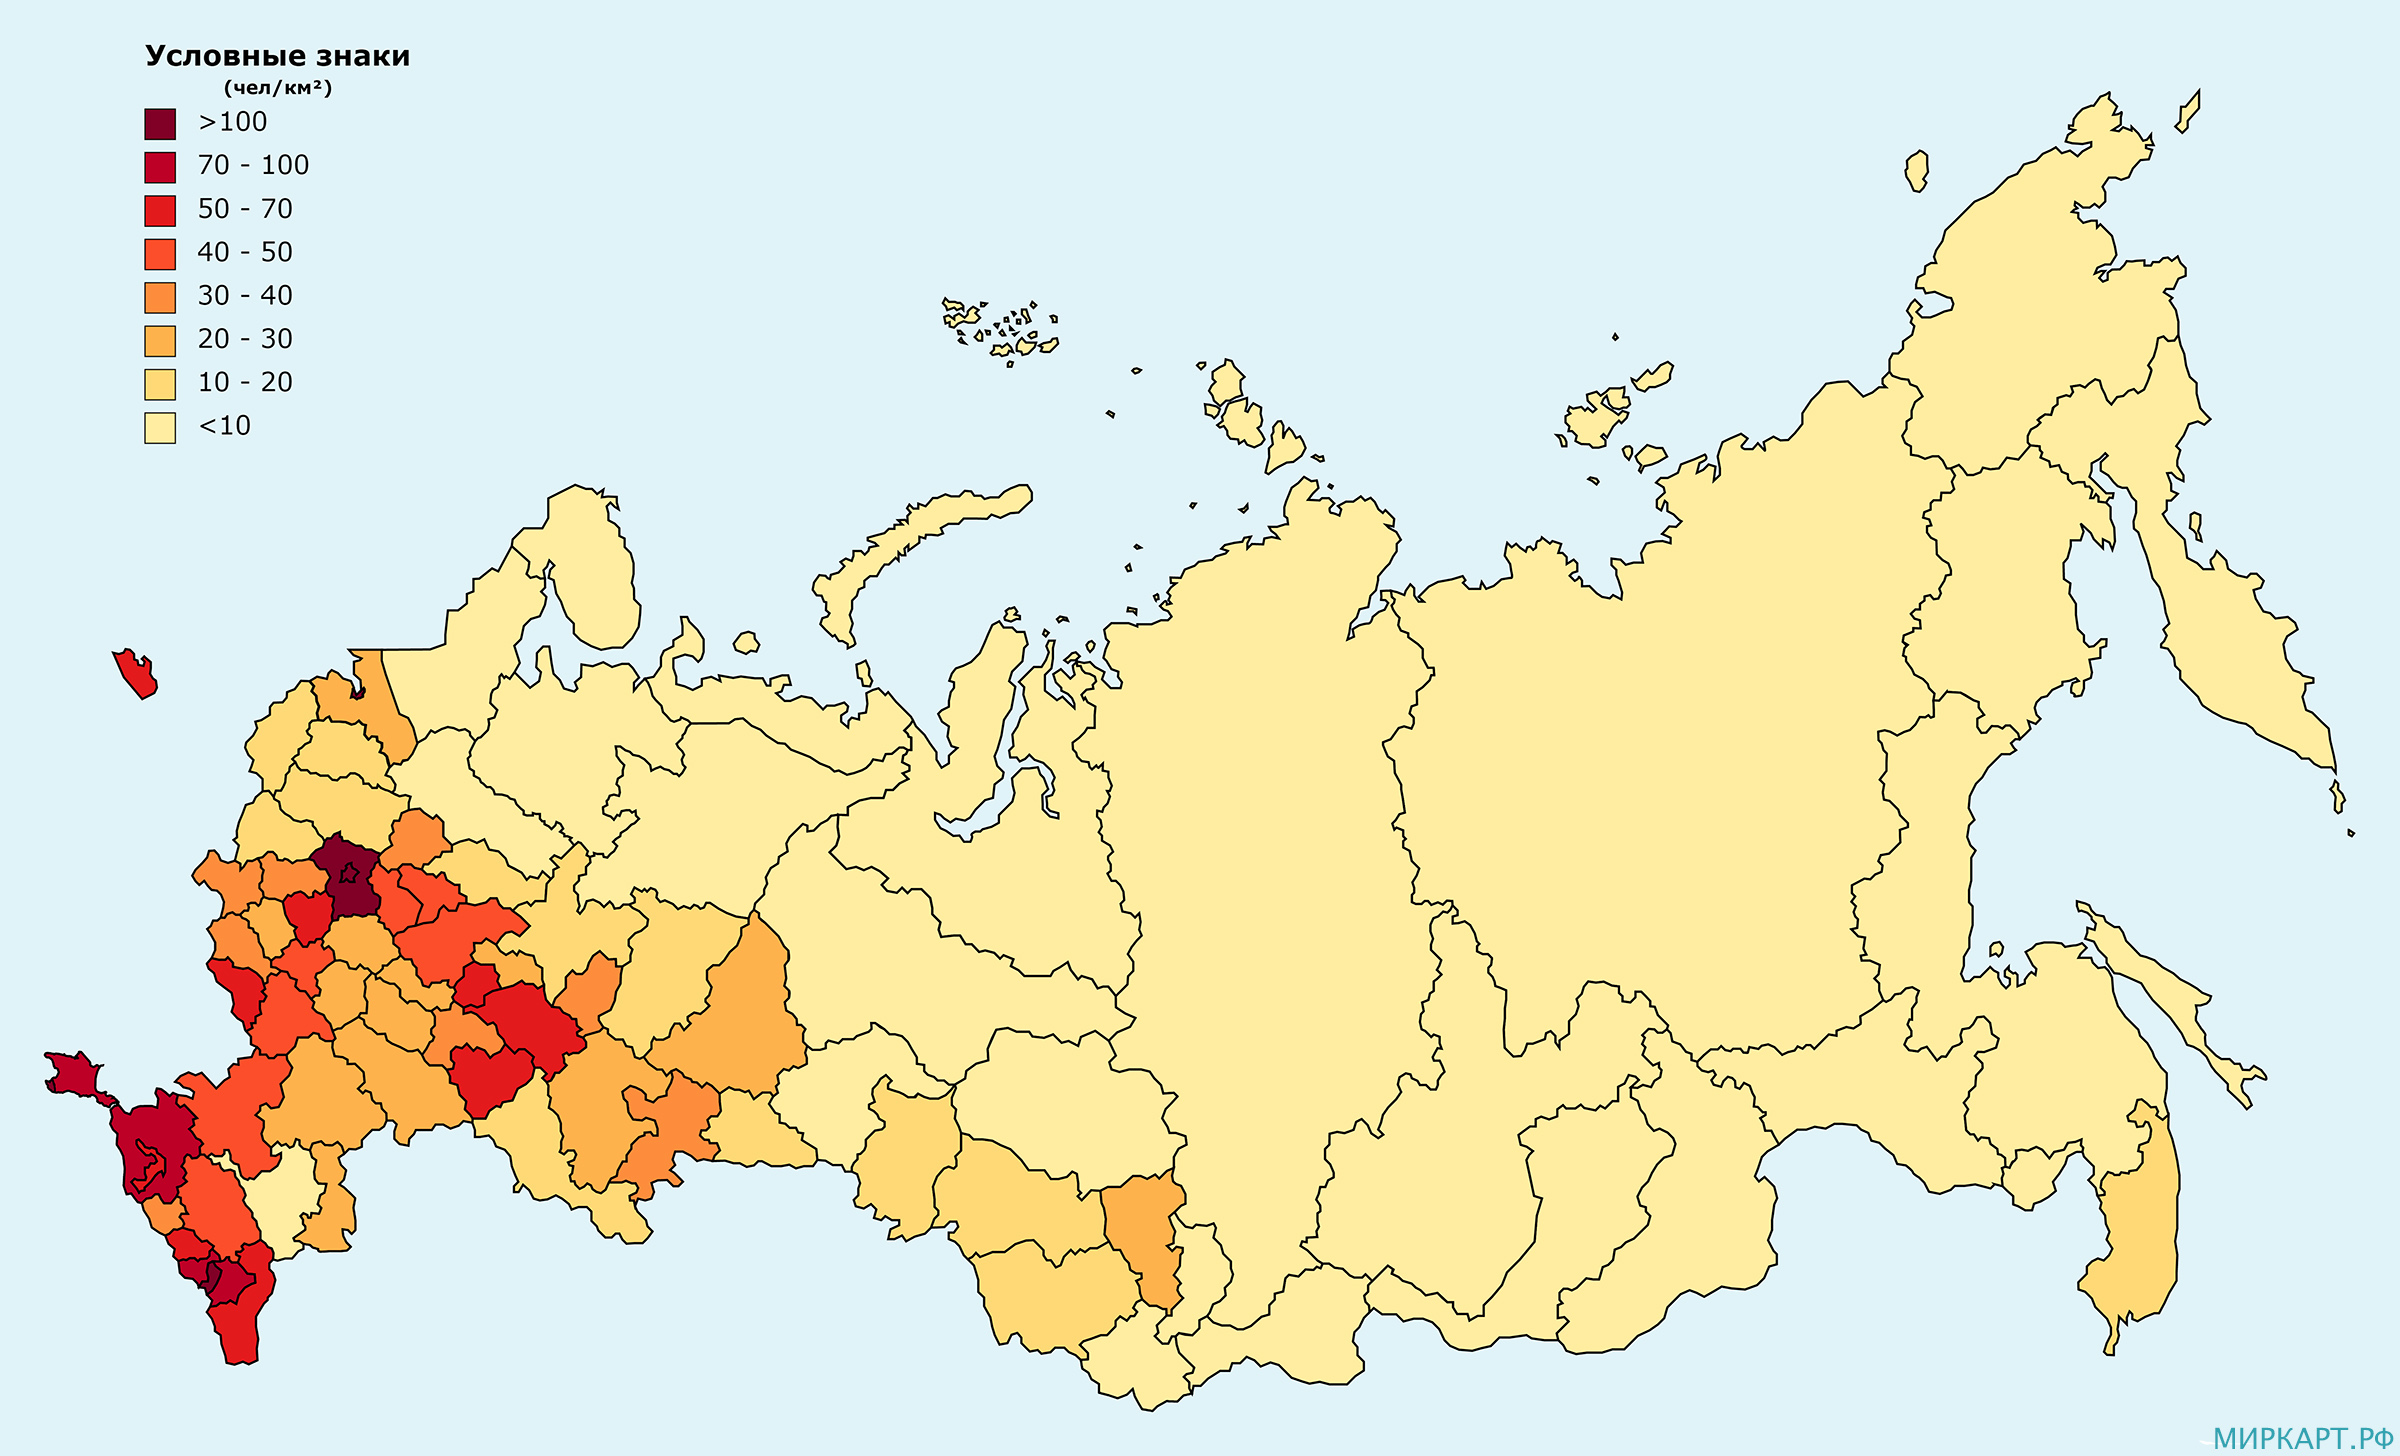 Плотность населения россии география 8 класс